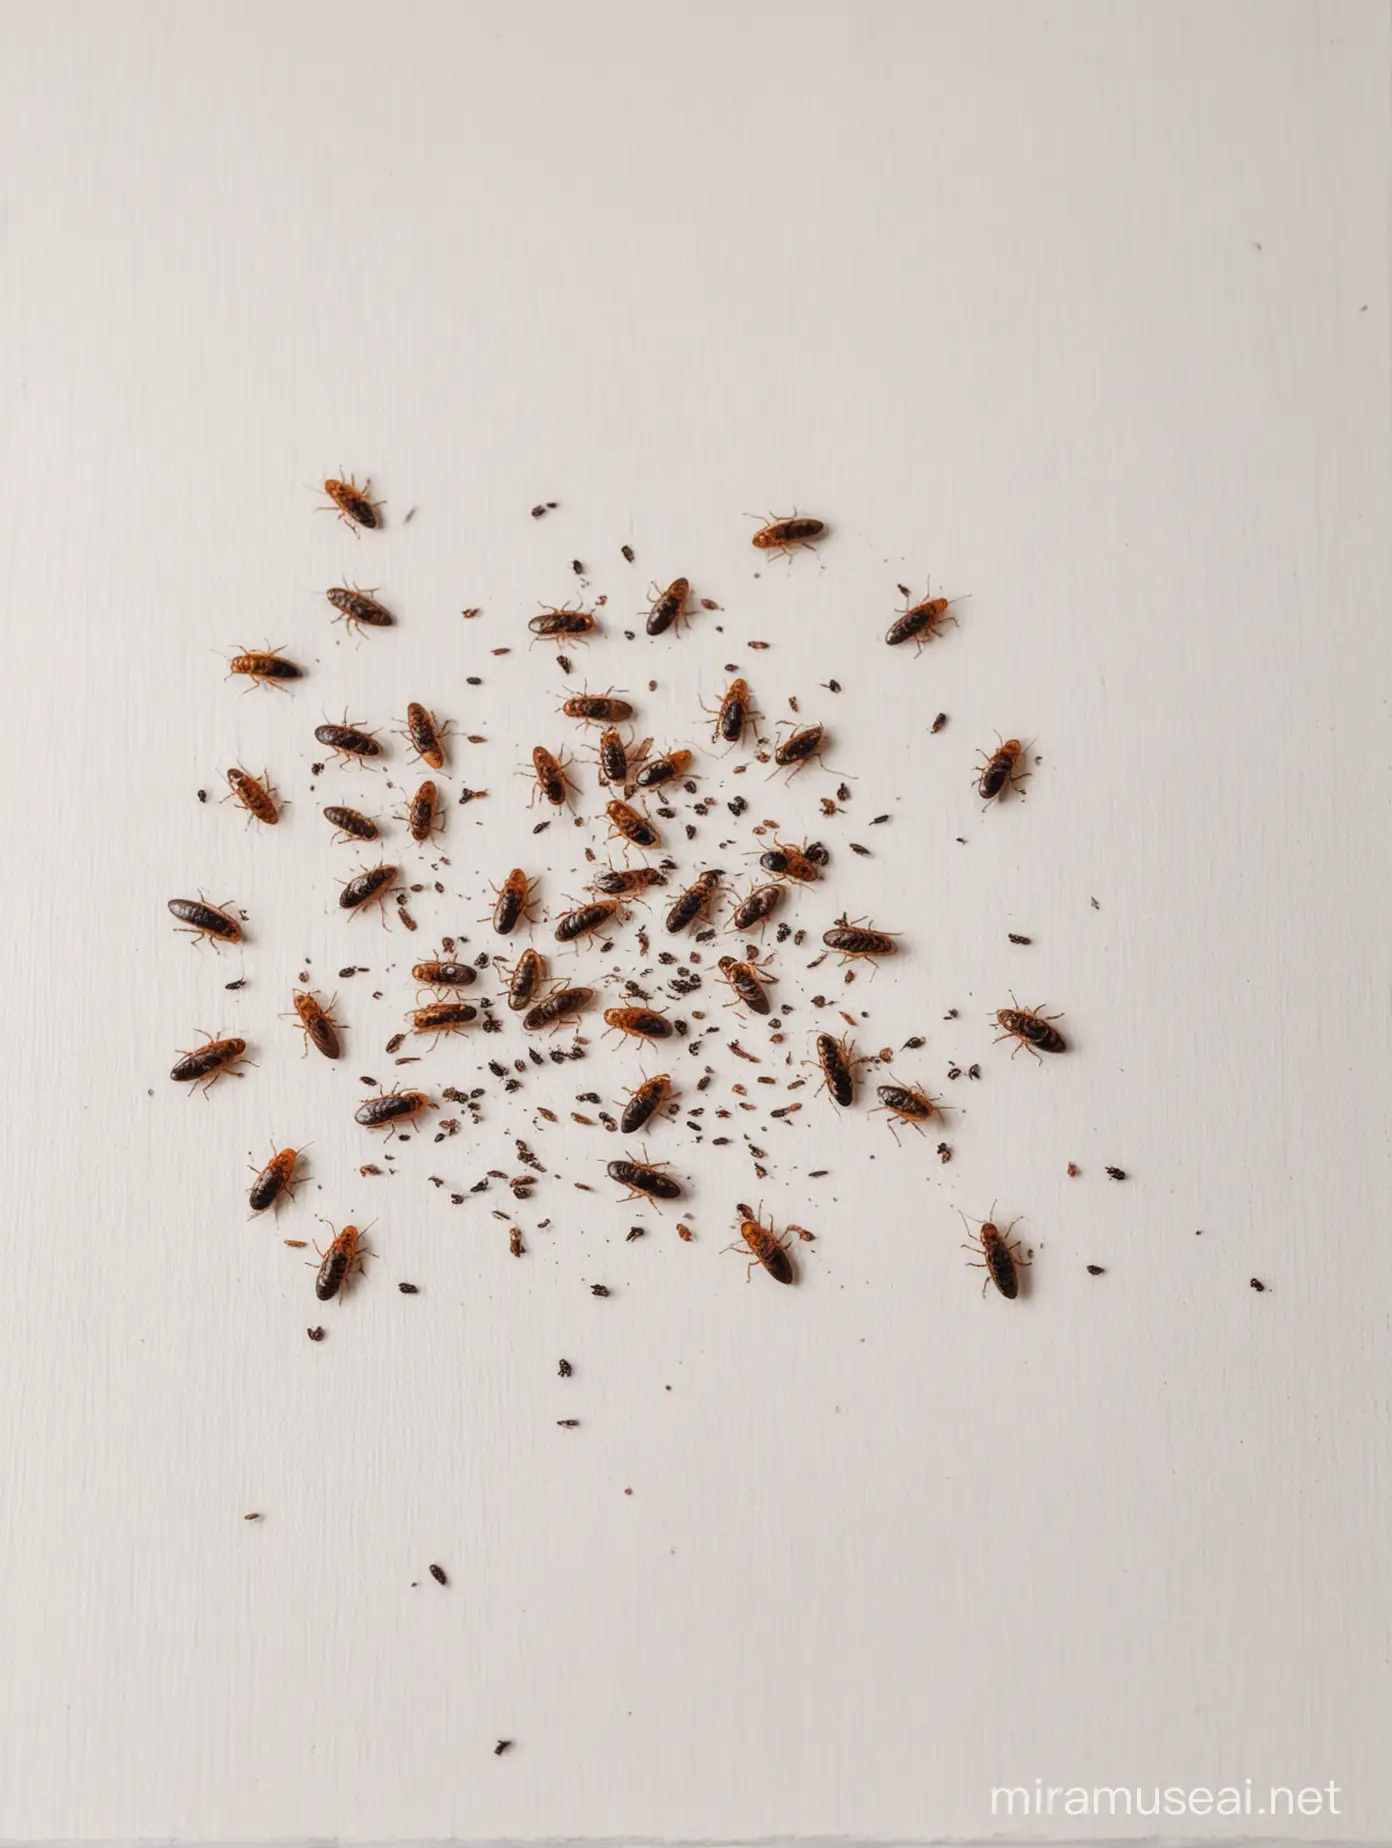 мертвые мухи и таракане валяются на белом столе